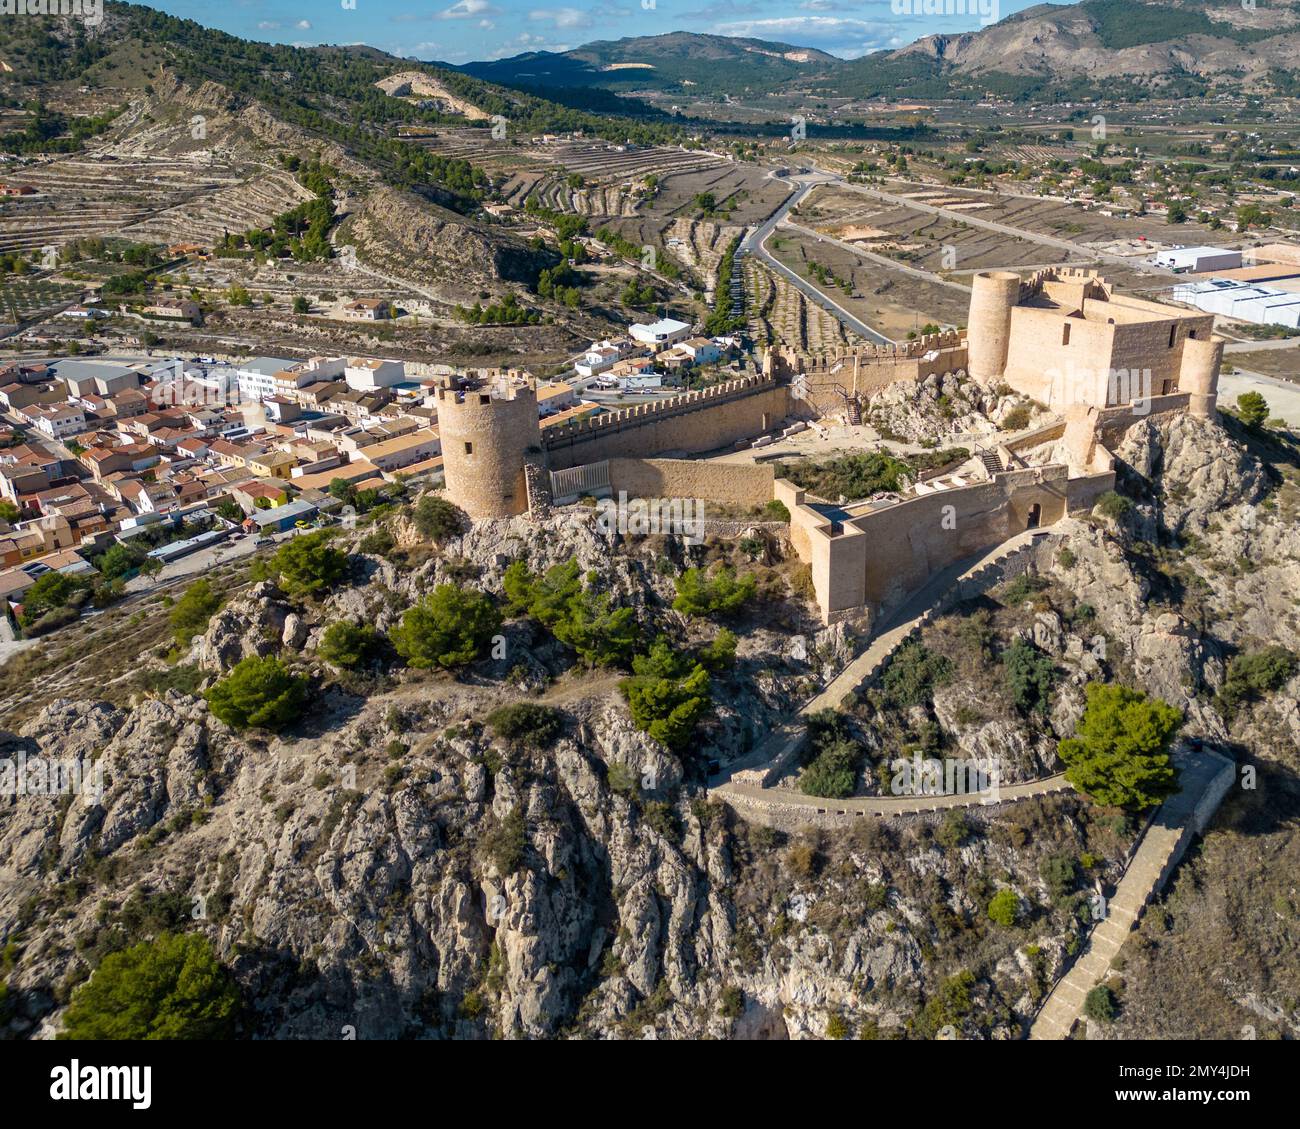 The castle of Castalla in Alicante, Spain Stock Photo